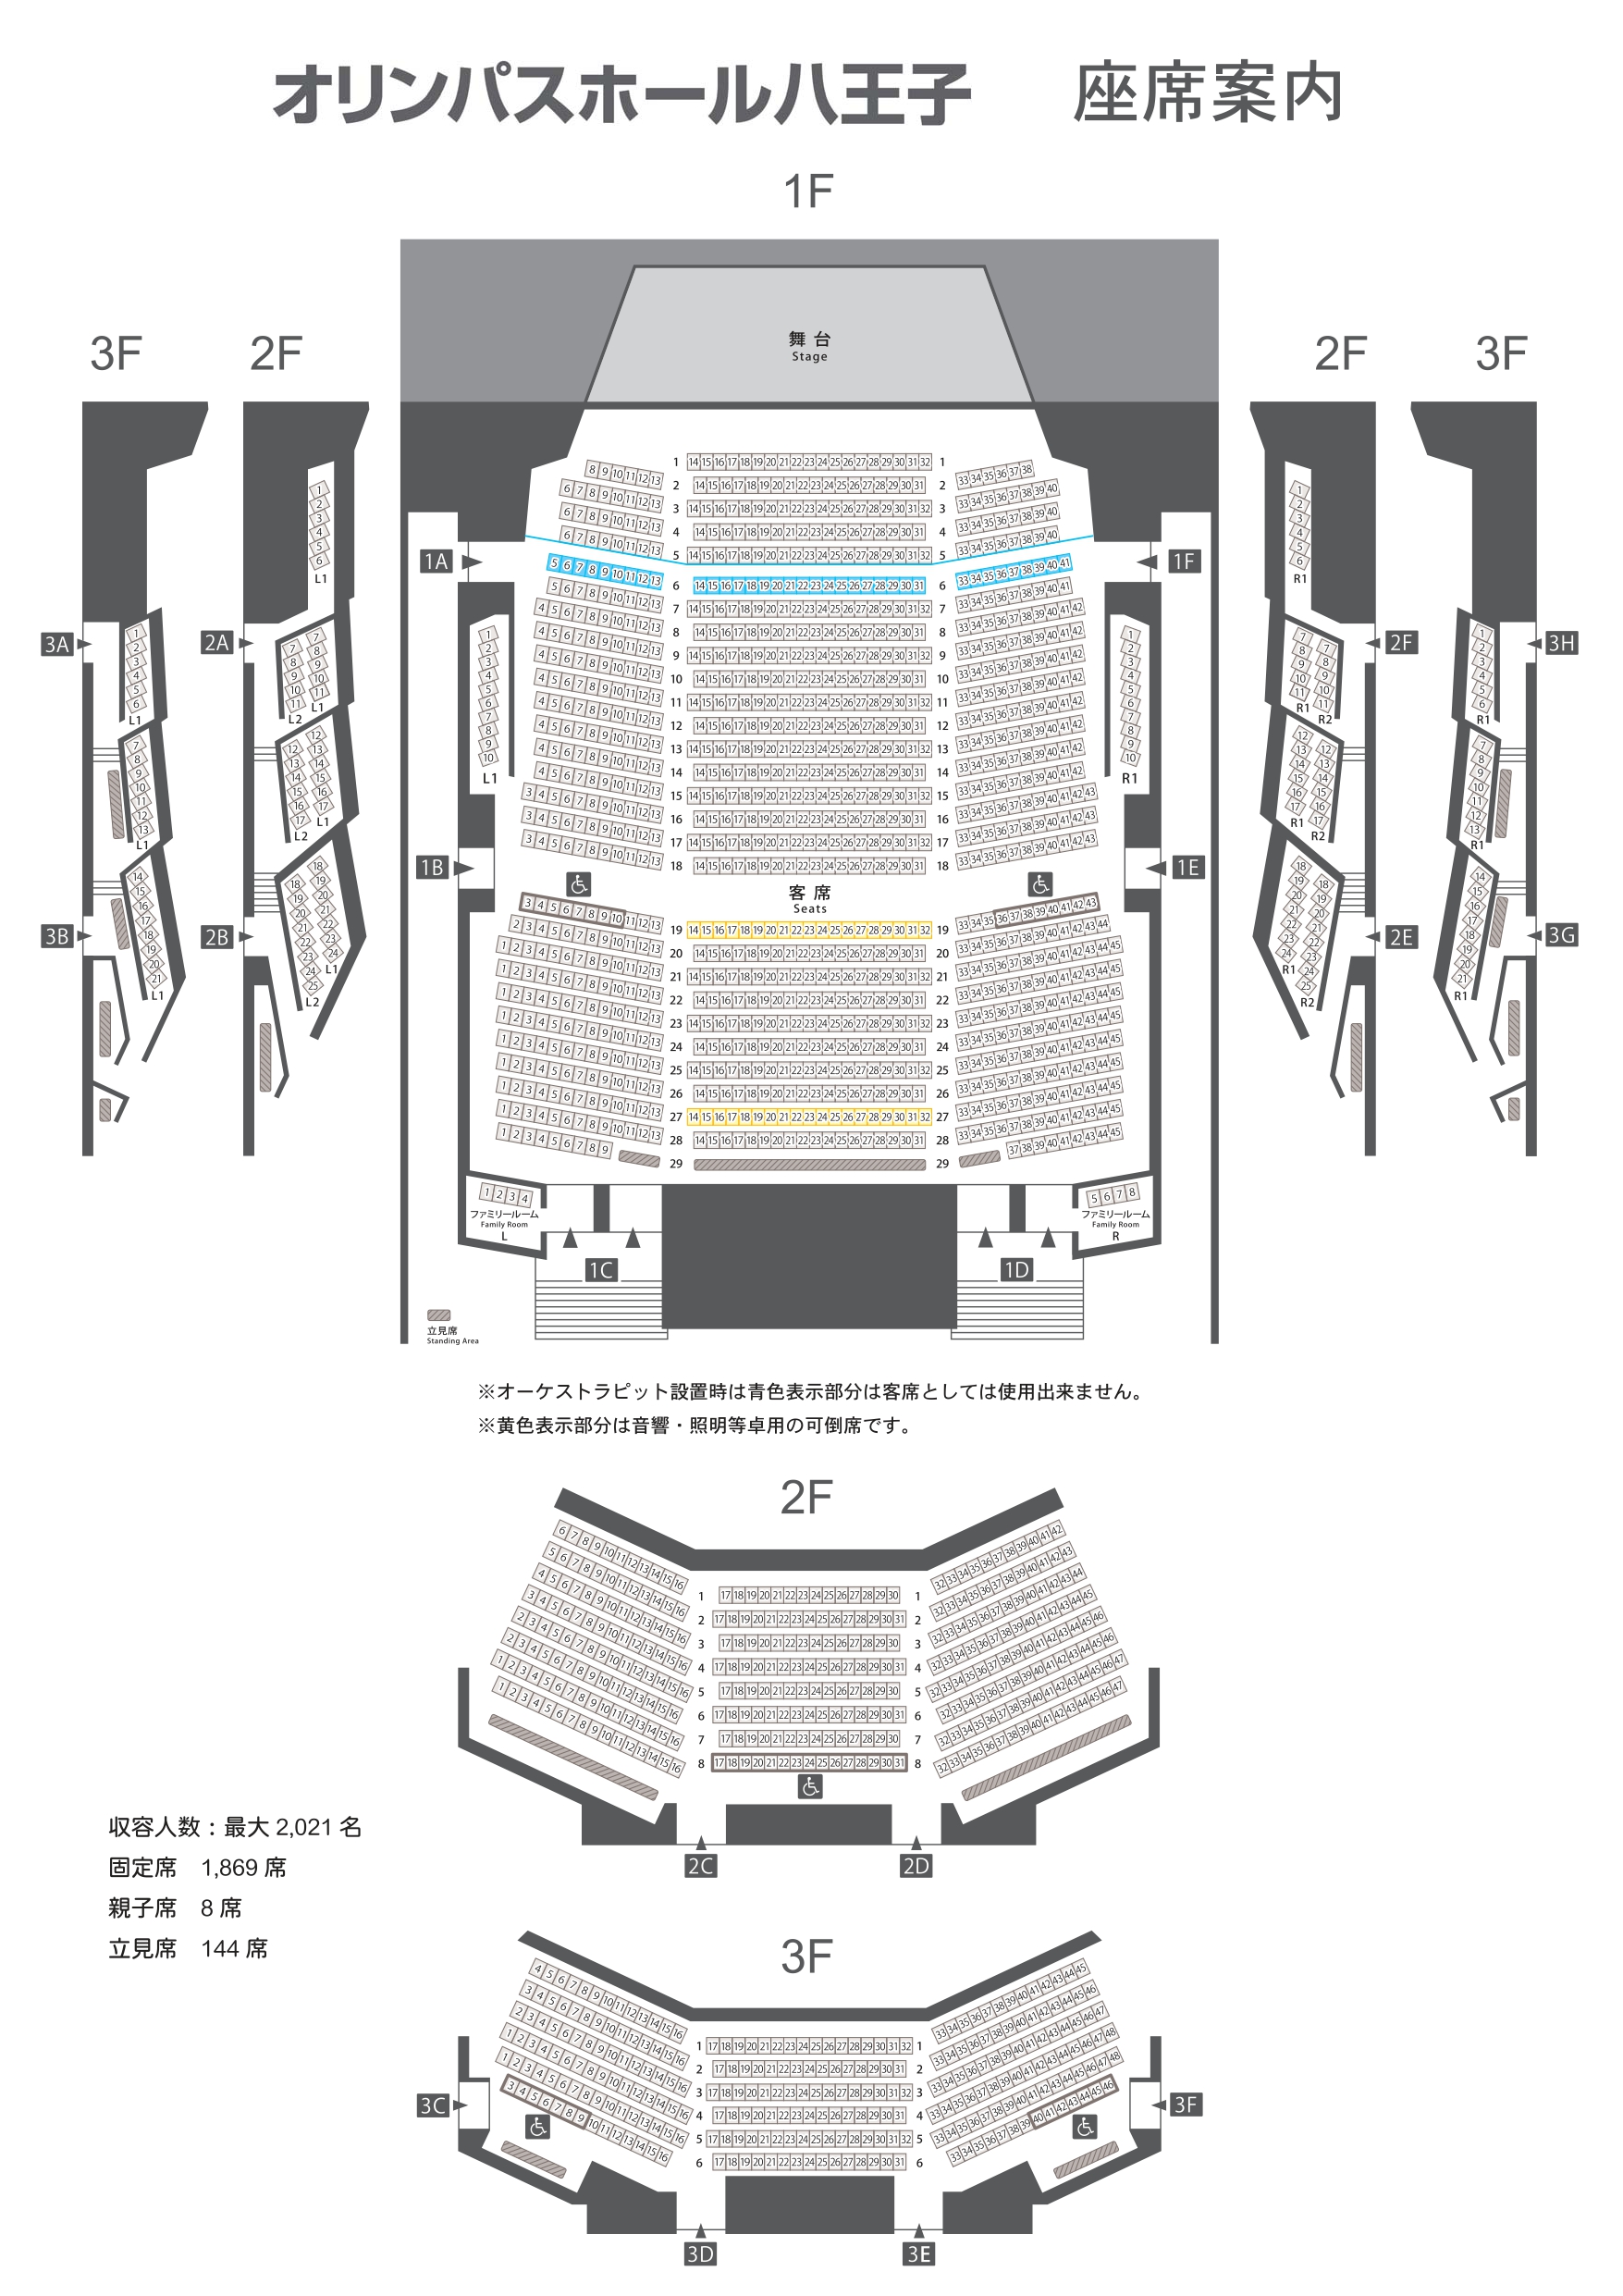 オリンパスホール八王子 座席の見え方や段差を画像とともに解説 座席ウォッチャー